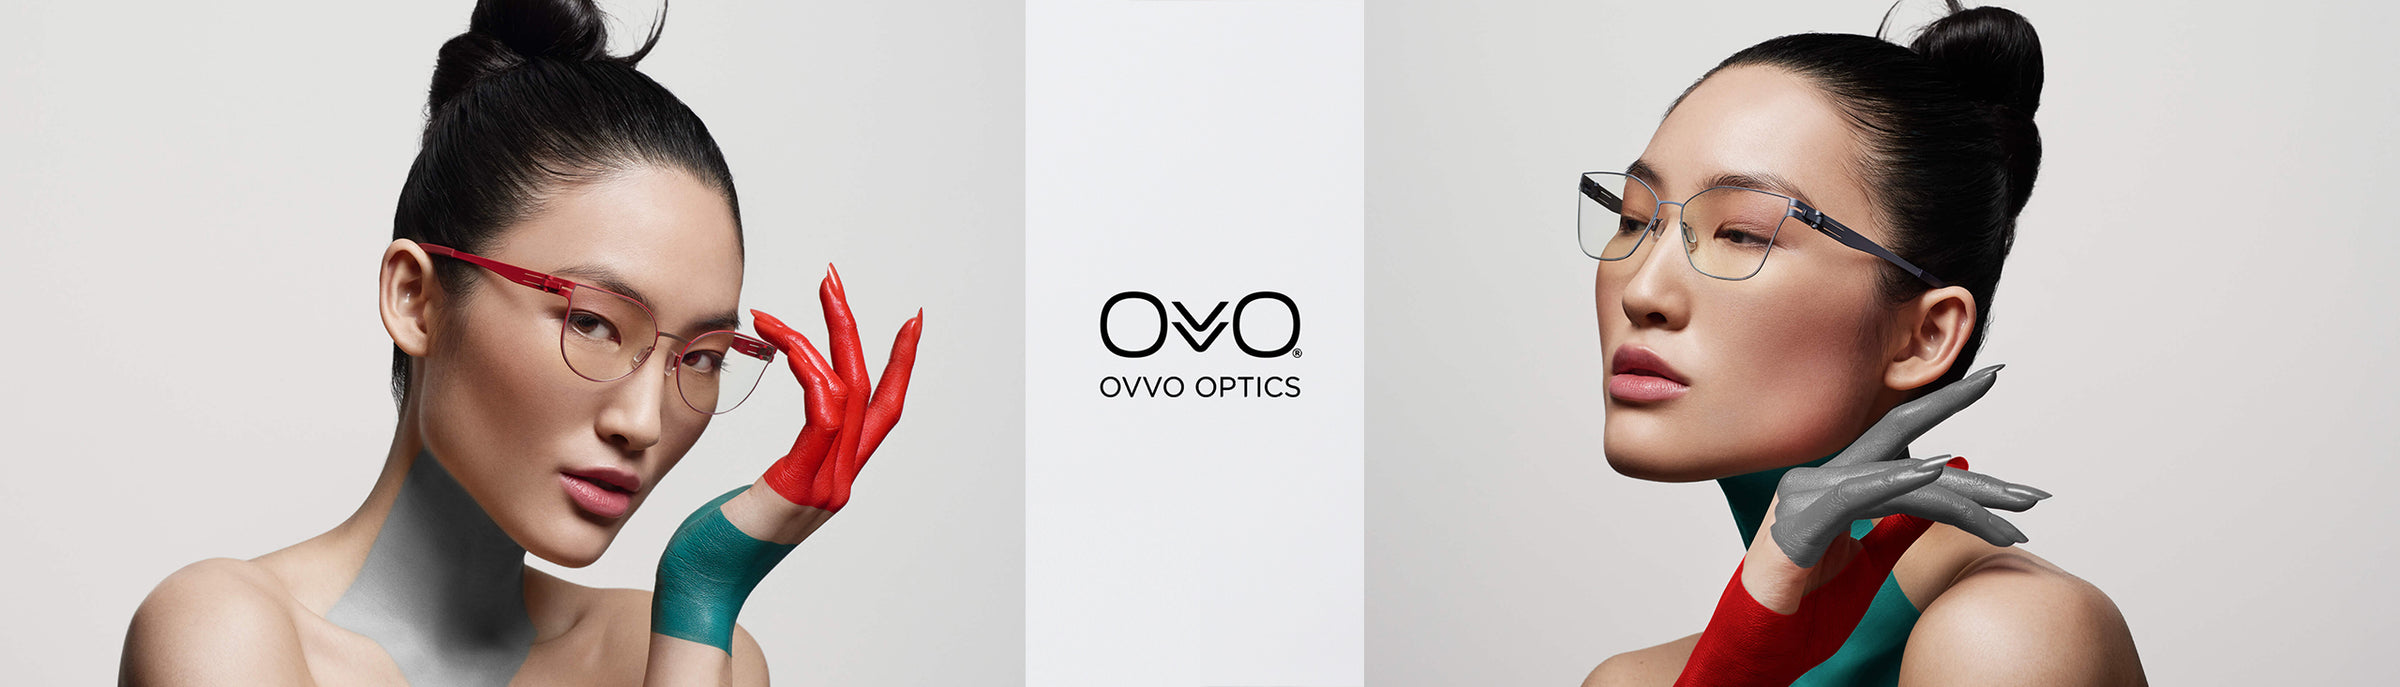 OVVO Eyeglasses